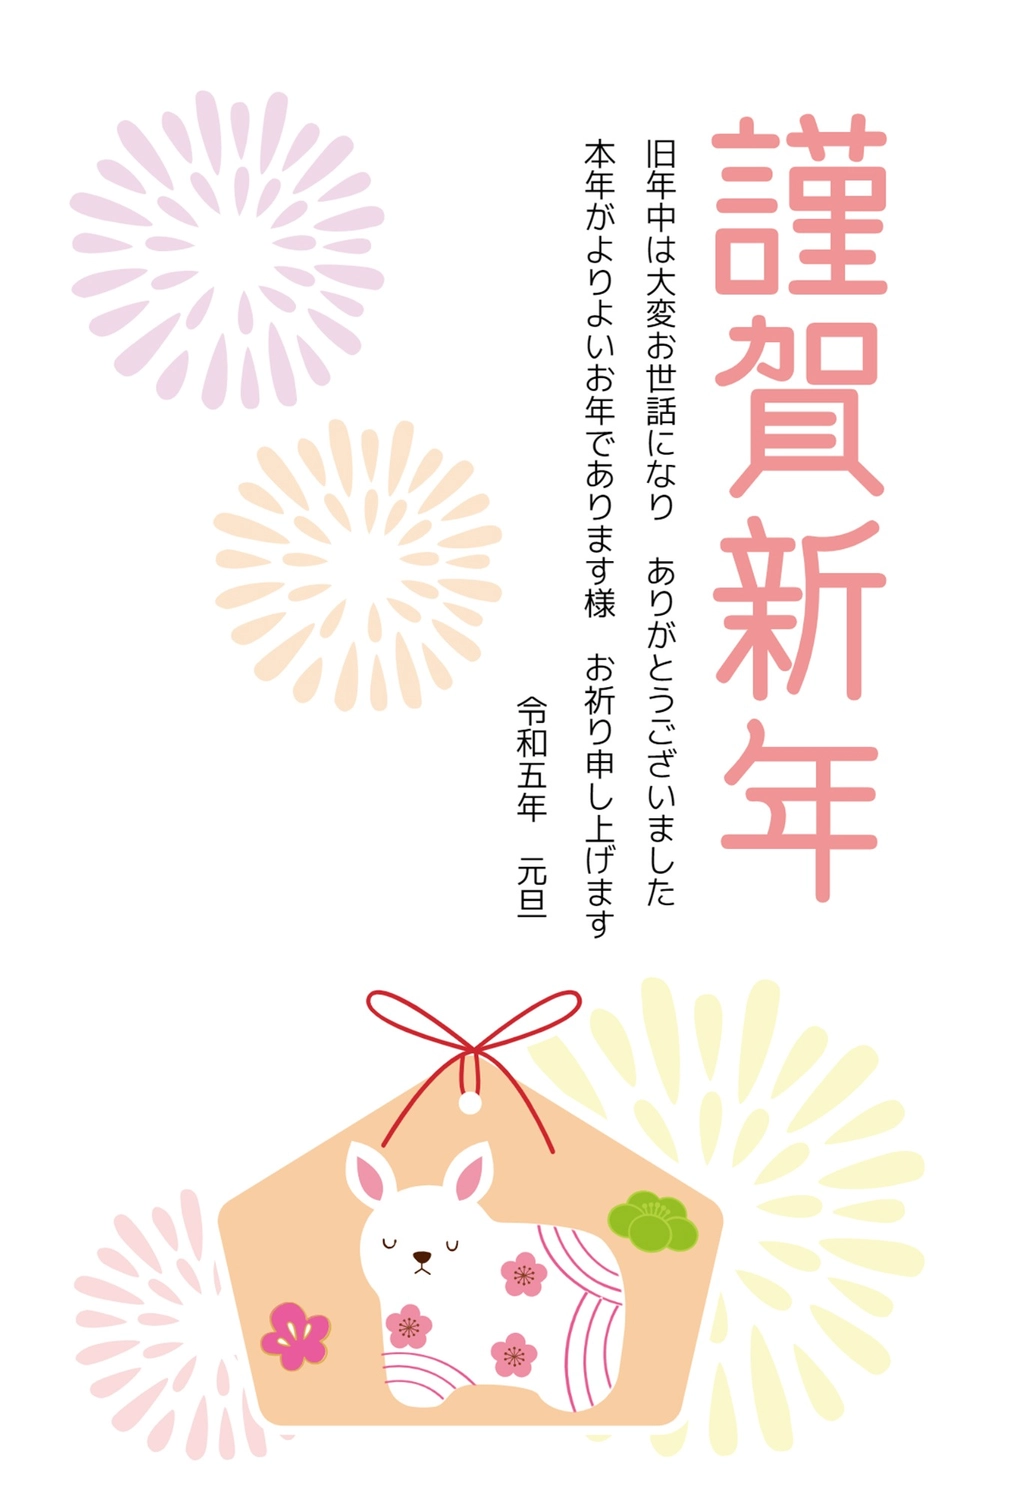 うさぎの絵馬の年賀状, greetings, fireworks, concord, New Year Card template